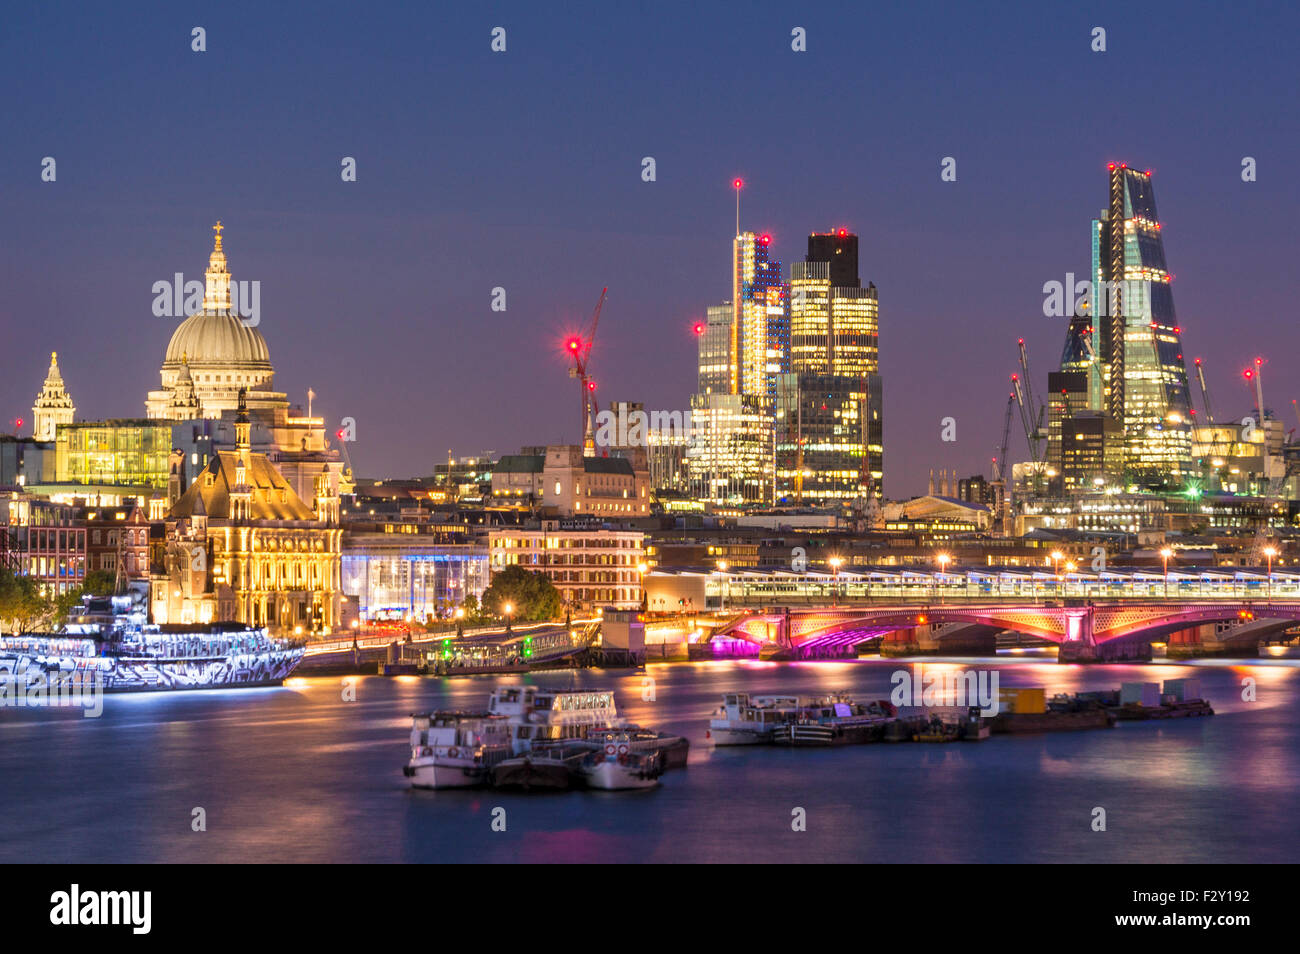 La Cathédrale St Paul et de la ville de London Skyline financial district au coucher du soleil Tamise Ville de London UK GB EU Europe Banque D'Images